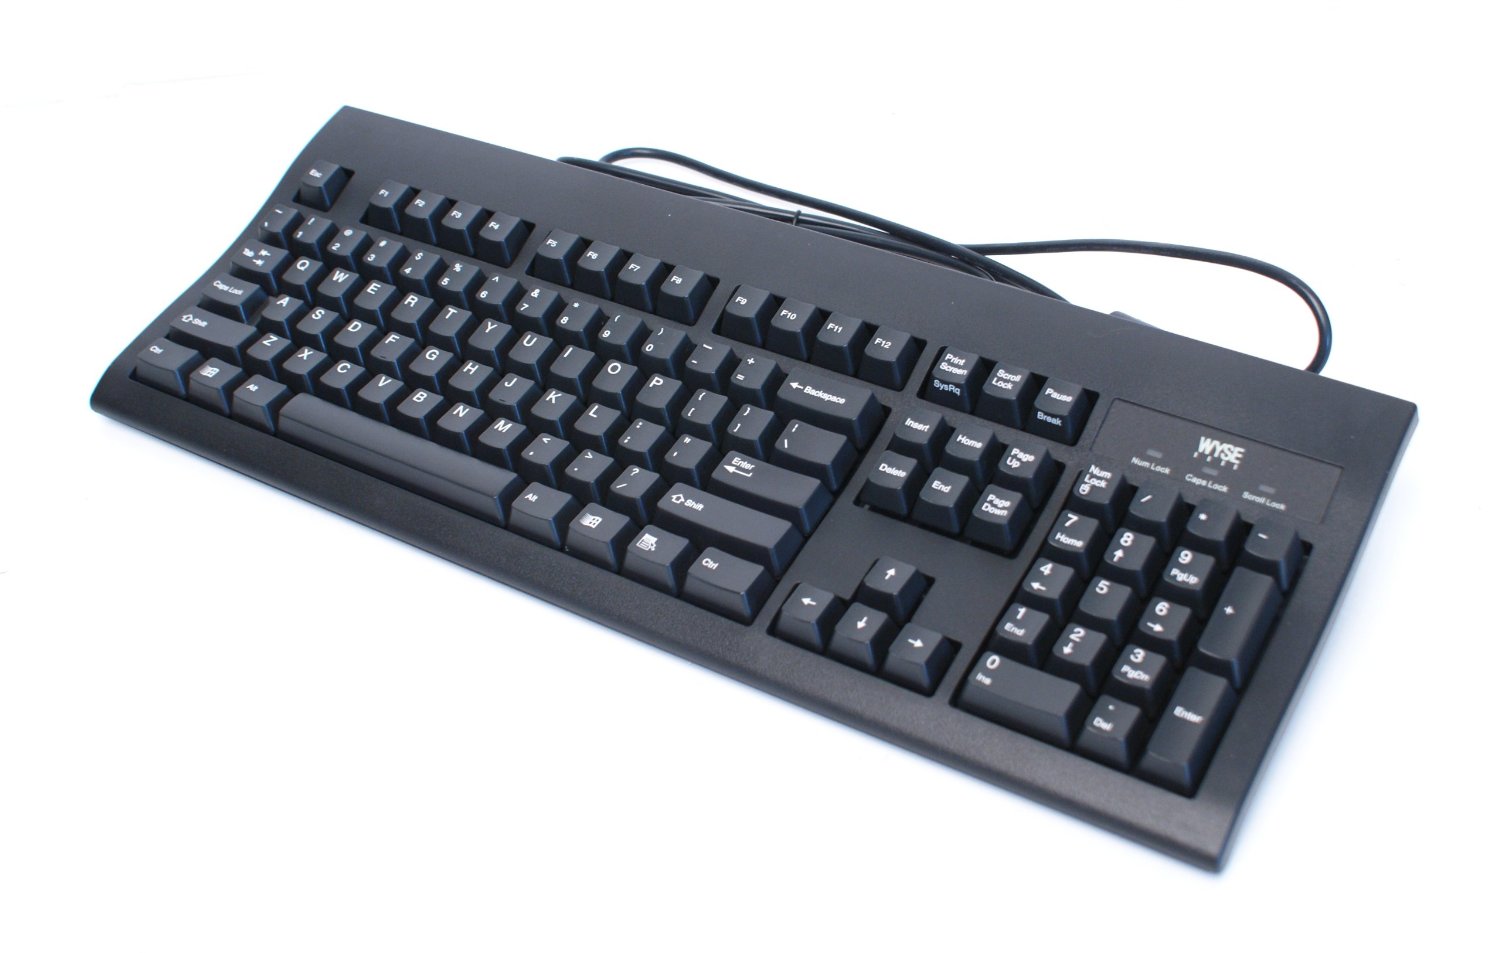 Wyse Standard 104-Key USB Black Keyboard with PS/2 Port Wyse M/N: KU-8933, 901716-06 / 901716-06L Rev. C or D